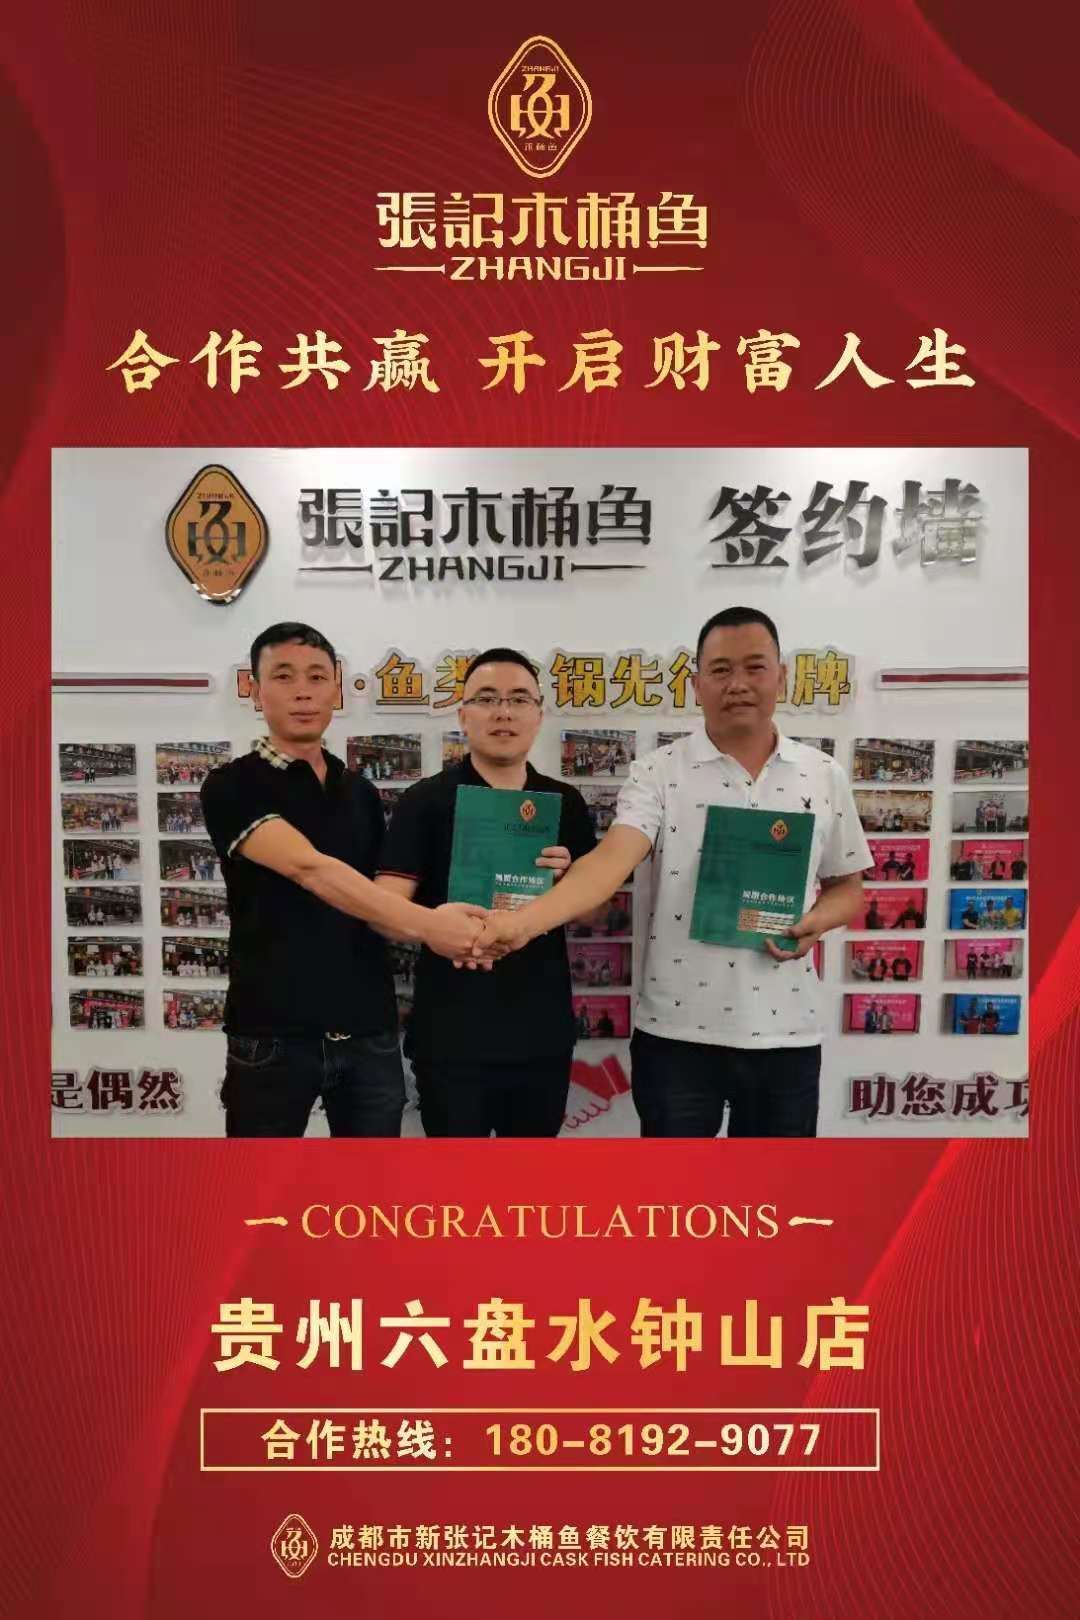 热烈祝贺   #张记木桶鱼#  贵州•六盘水•钟山店  签约成功